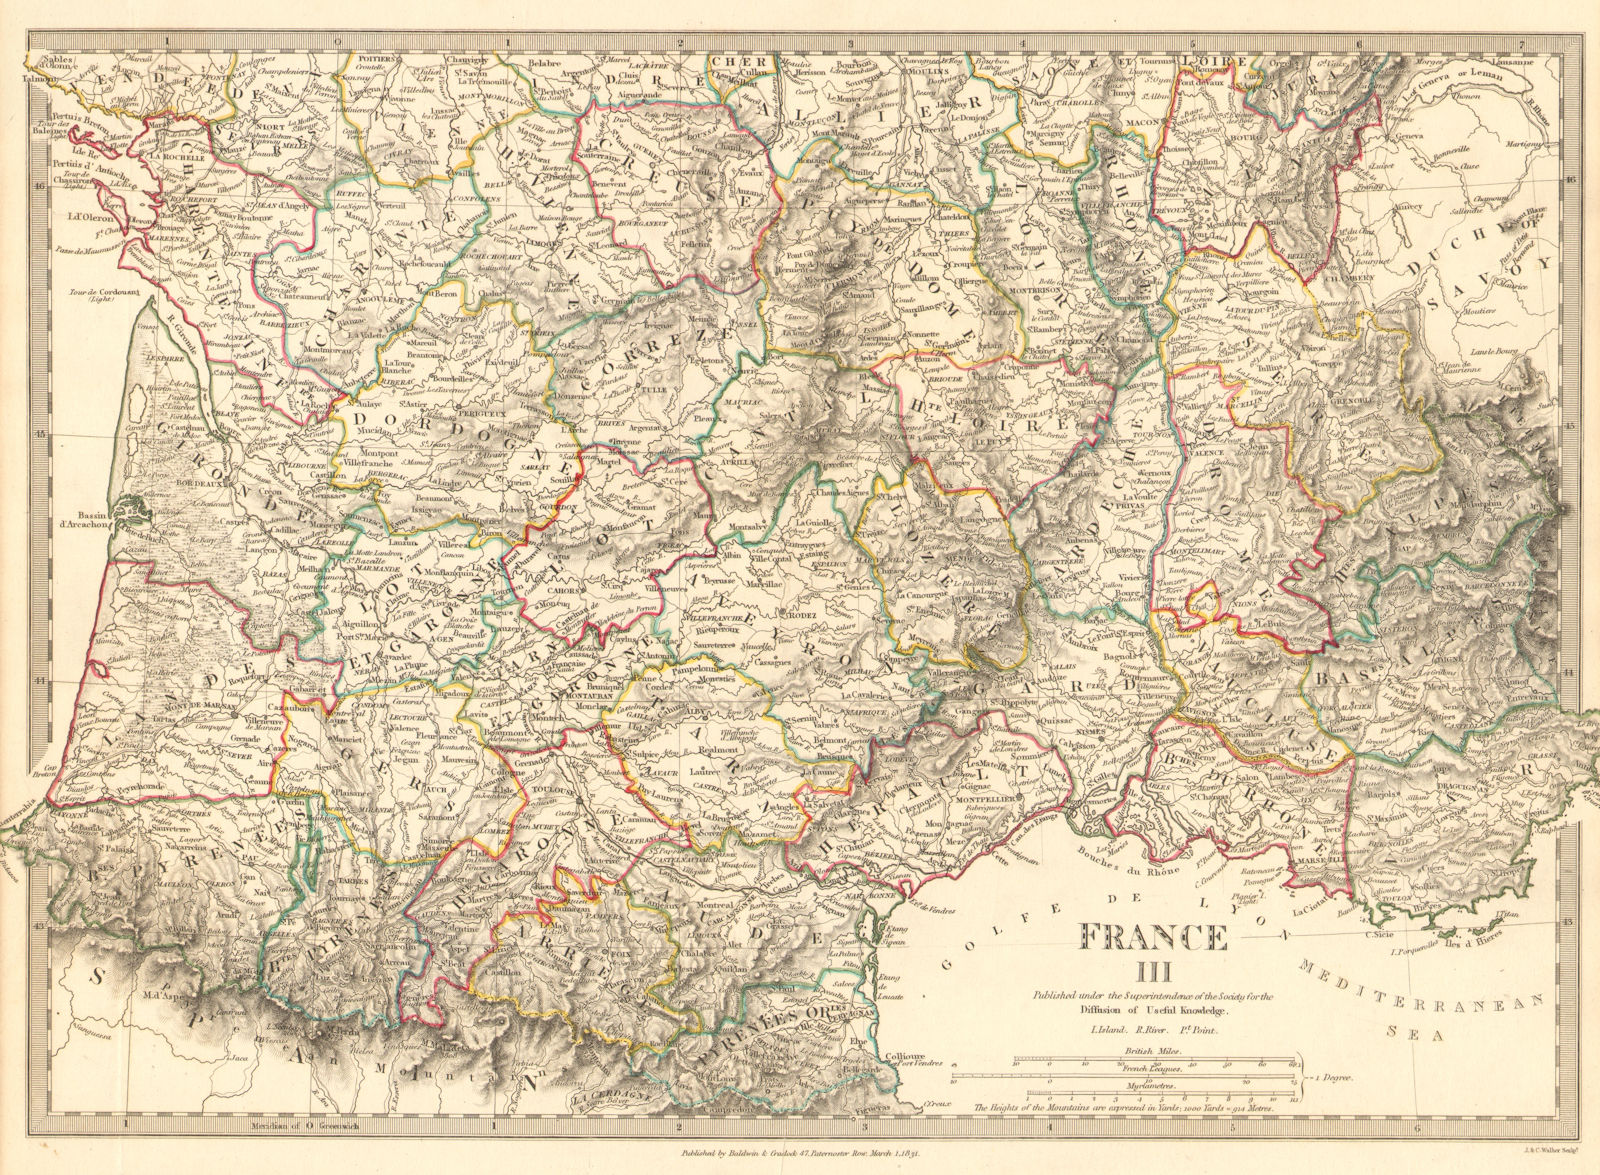 FRANCE STH.Aquitaine Pyrénées Provence Languedoc Rhône Auvergne.SDUK 1848 map